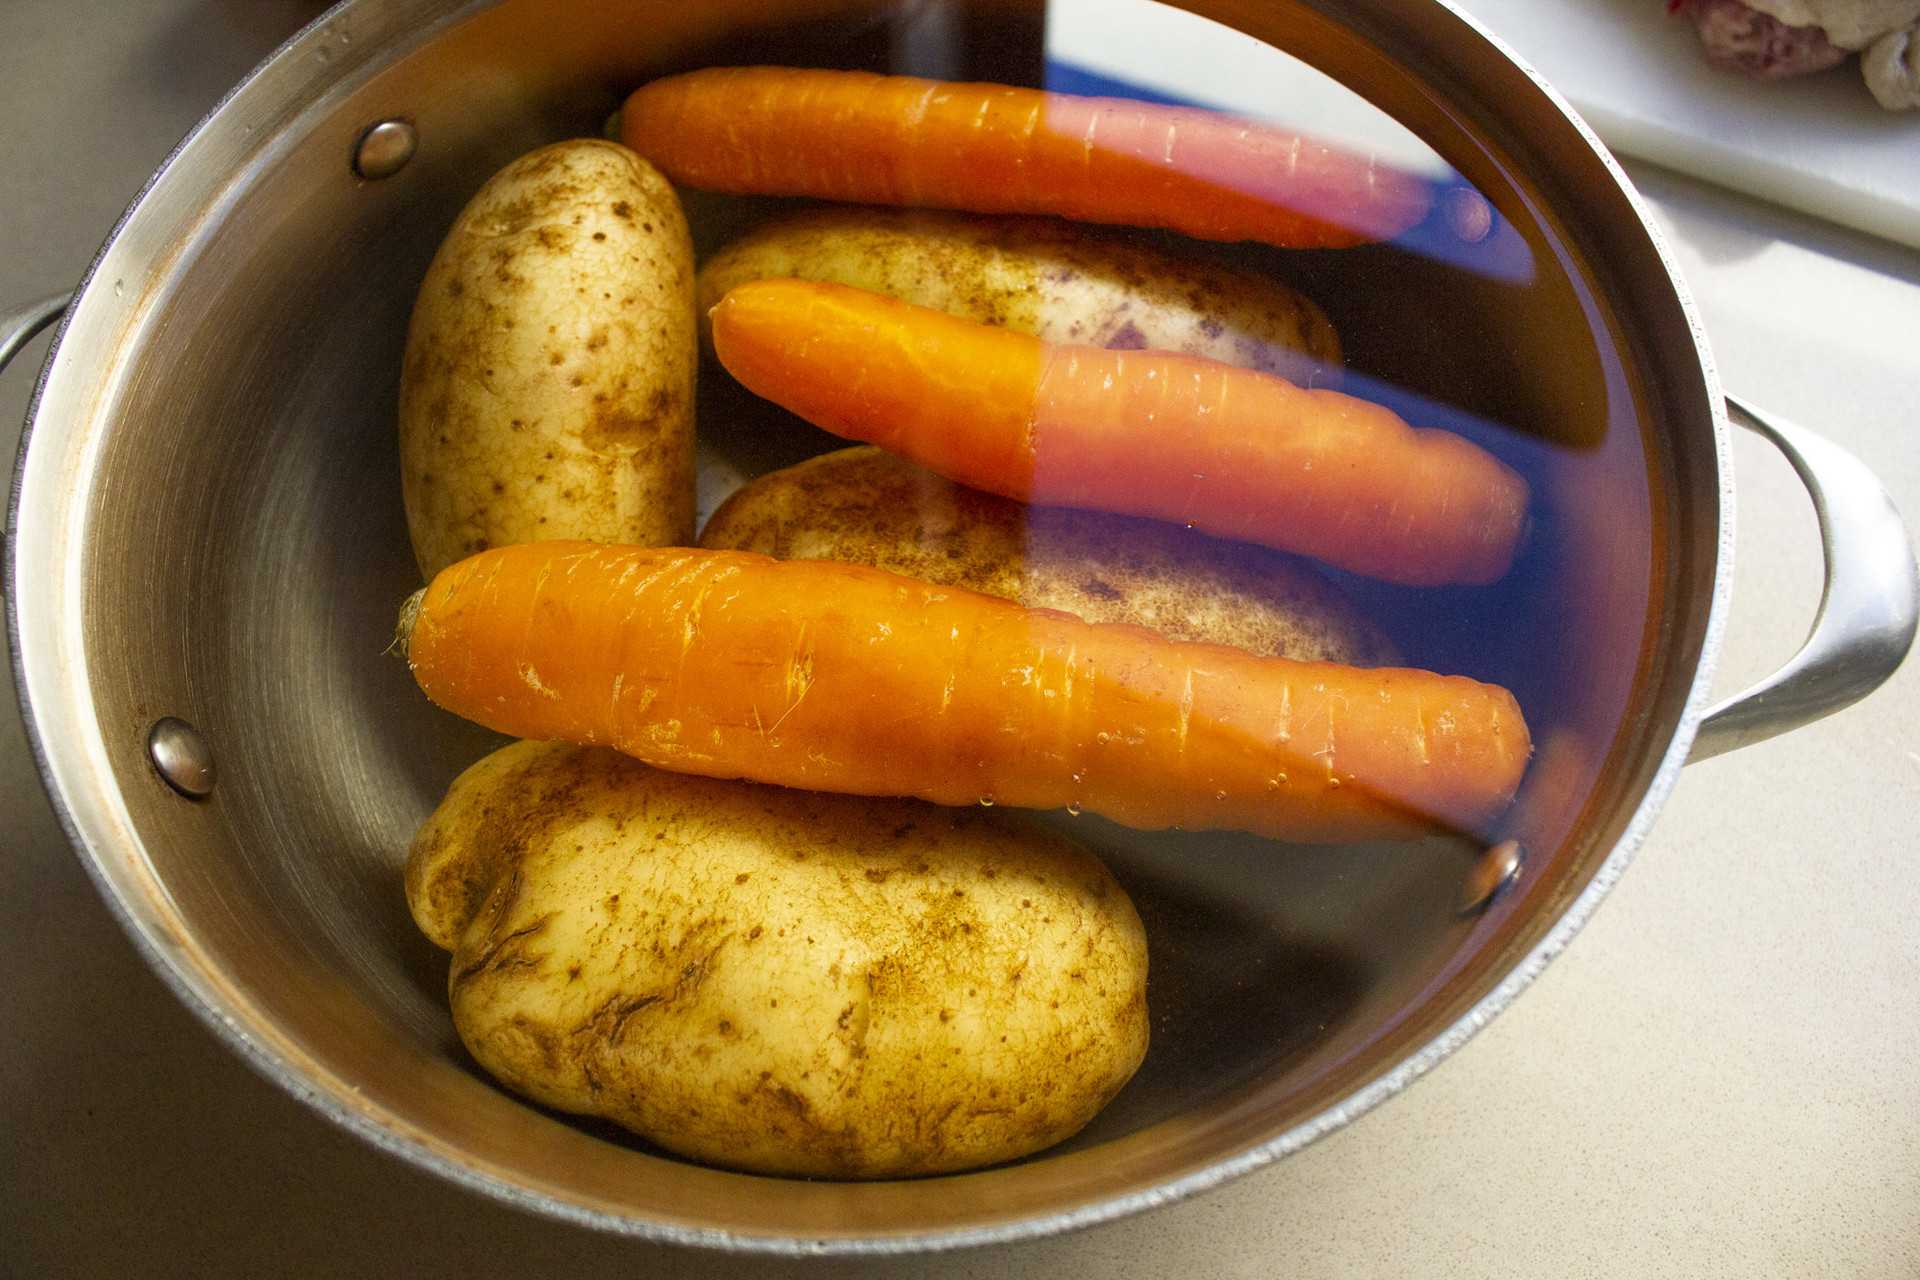 Суп картофельный с мясом - простые варианты вкусного блюда: рецепт с фото и видео